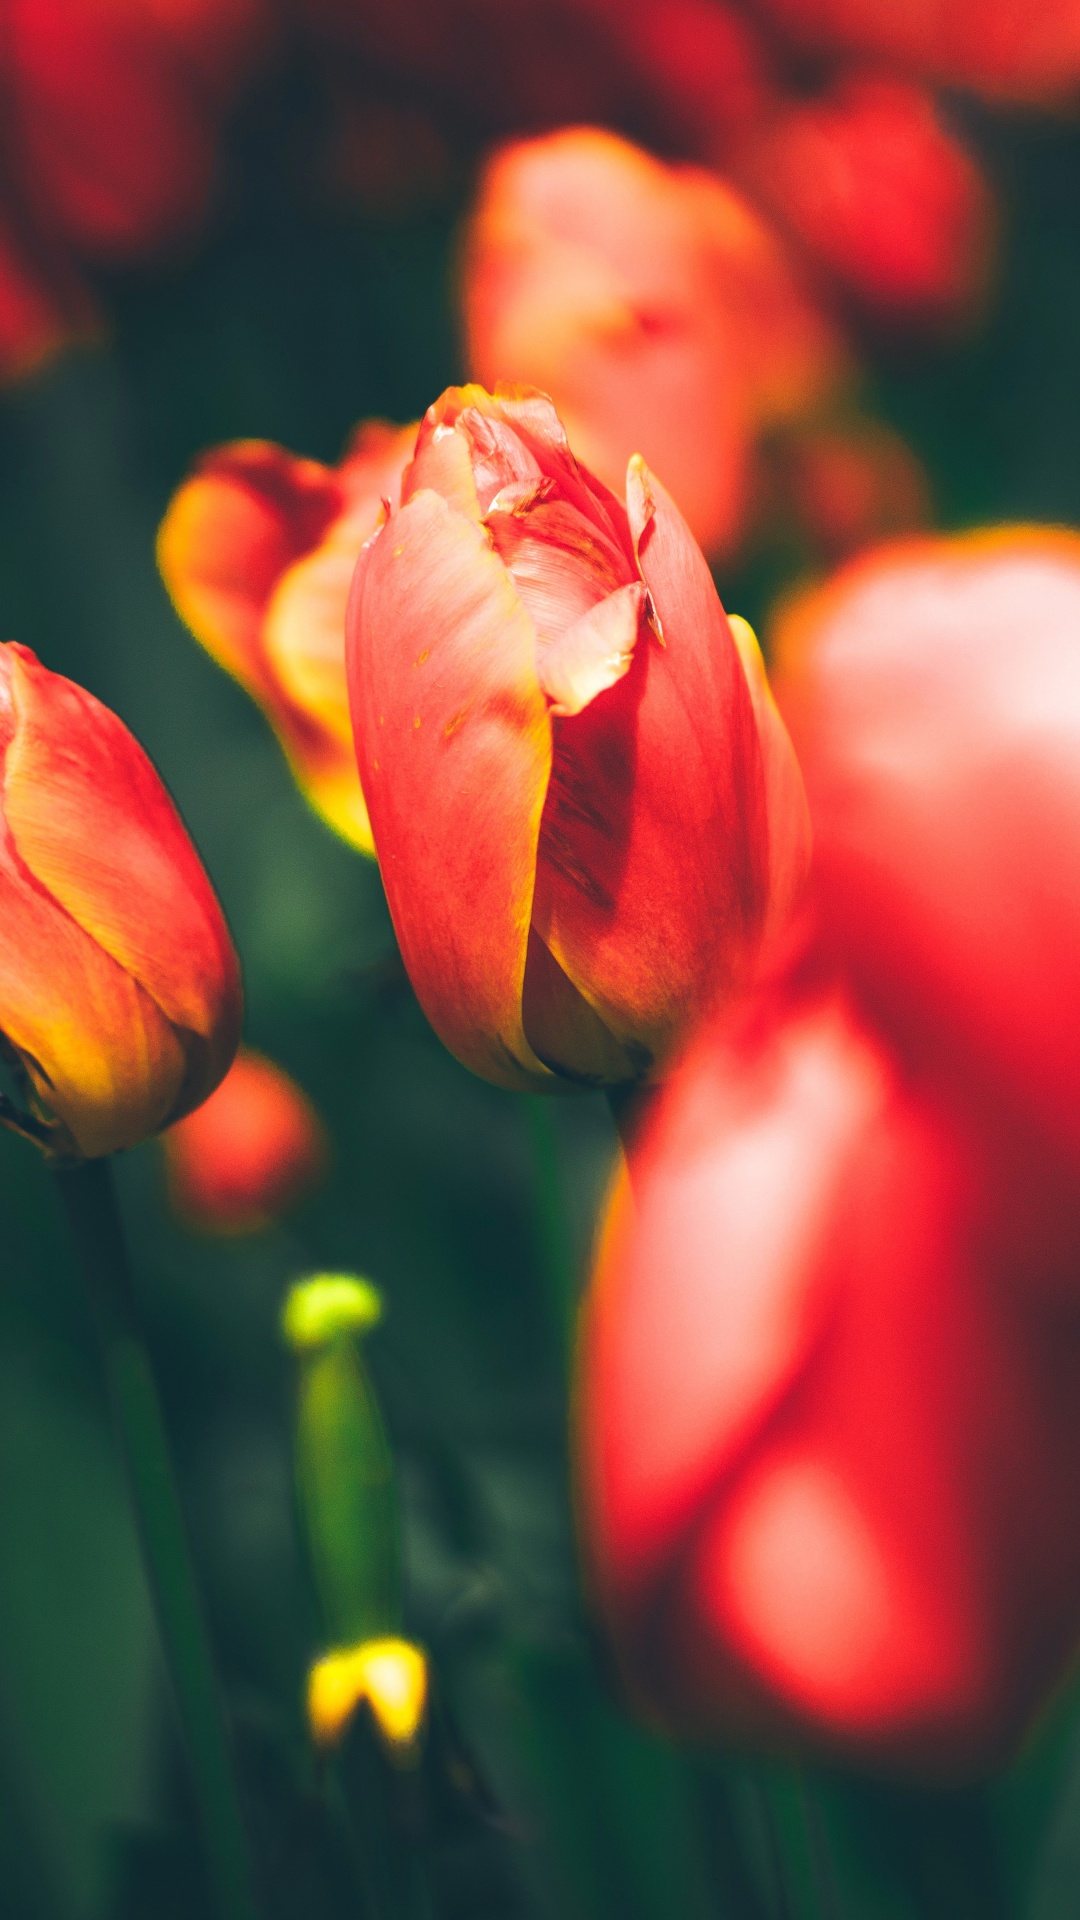 Tulipes Rouges en Fleurs Pendant la Journée. Wallpaper in 1080x1920 Resolution